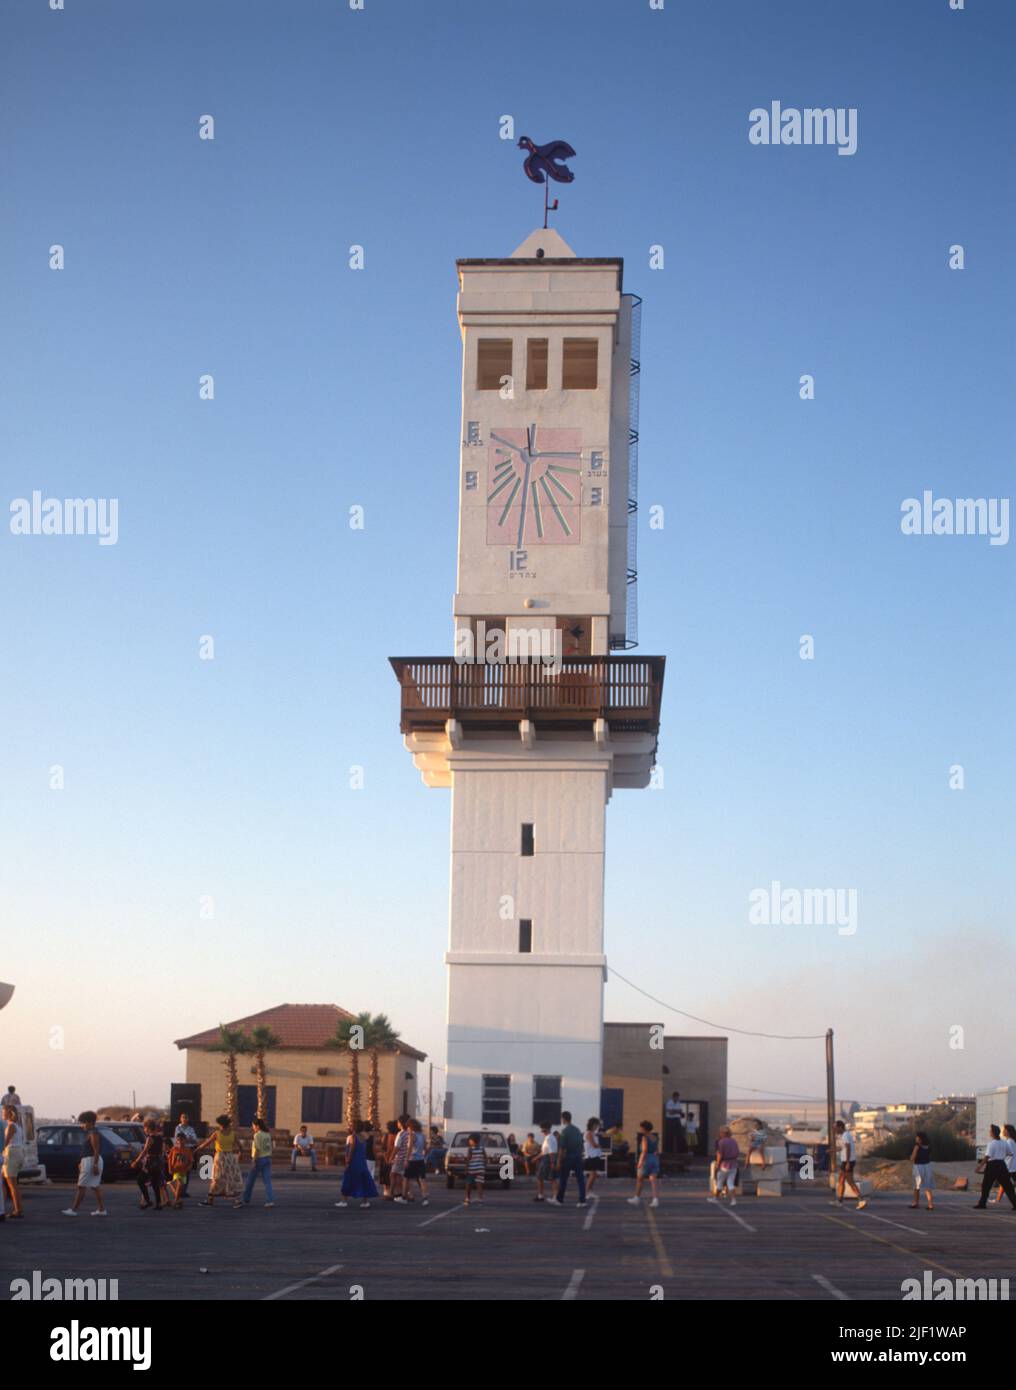 Israël, Asdod, tour lumineuse avec cadran solaire dans la zone côtière. Banque D'Images